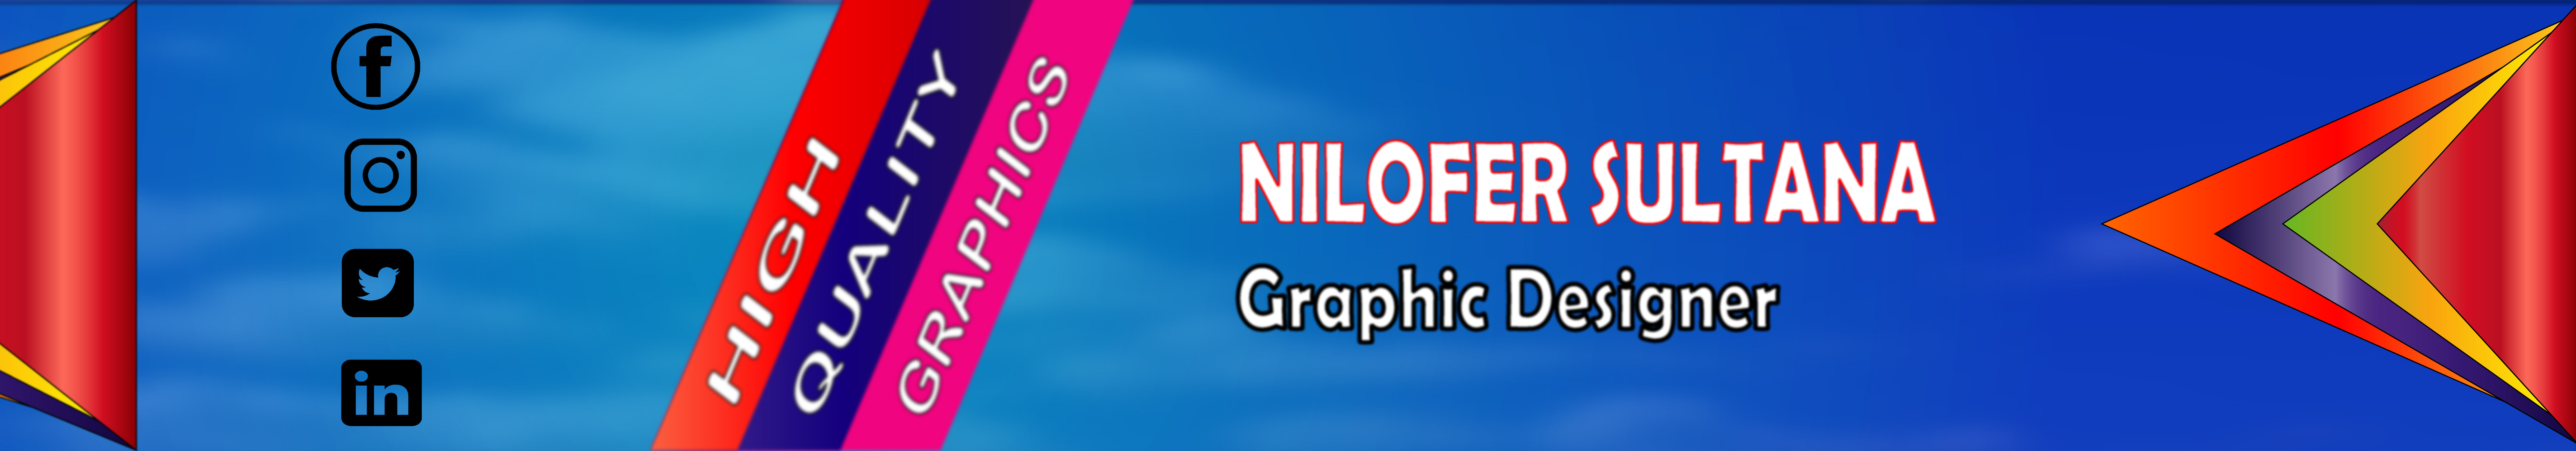 Nilofer Sultana ID: #7341174's profile banner